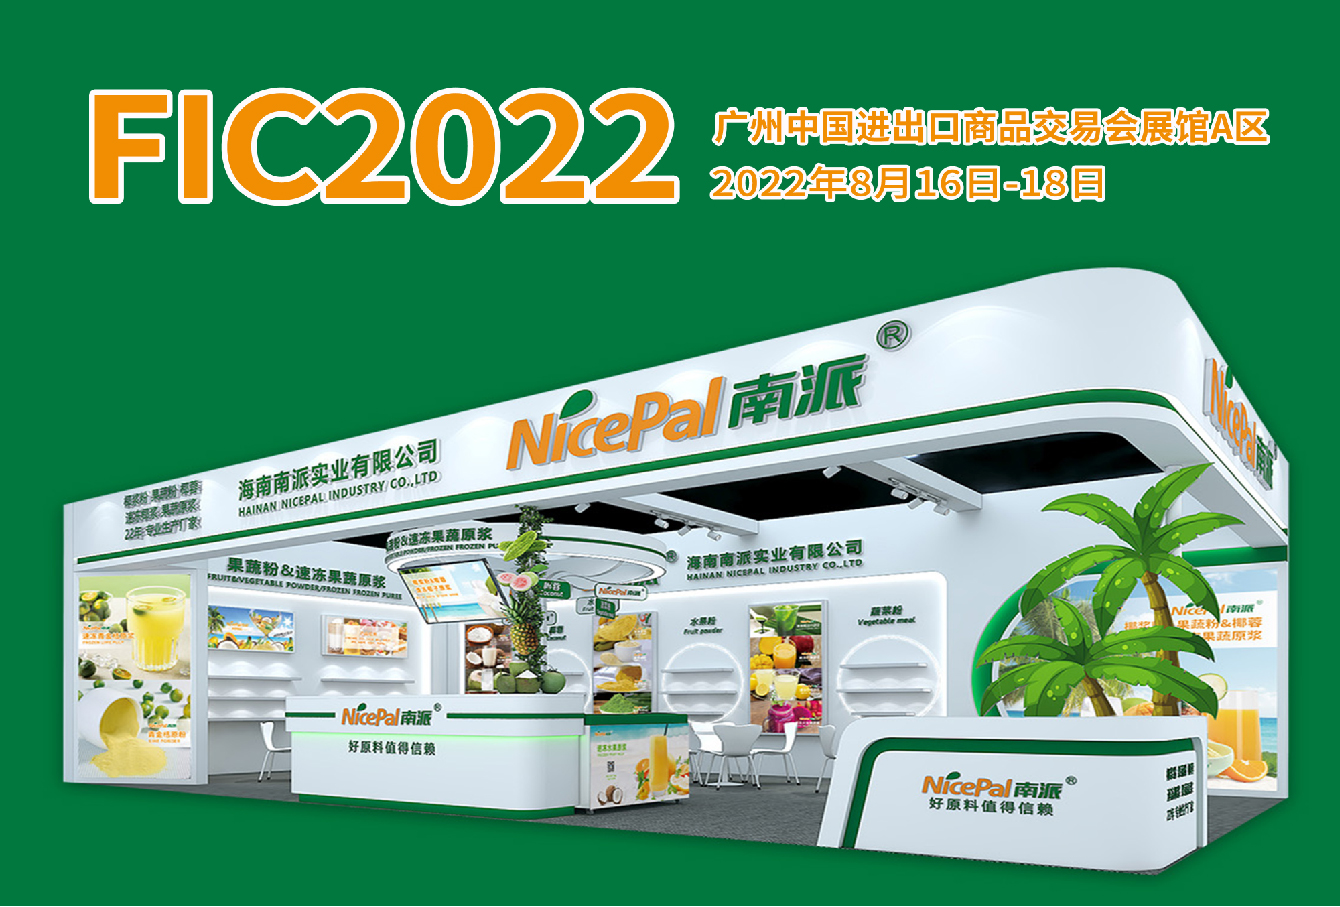 海南南派实业有限公司诚邀您参加（FIC2022）第二十五届中国国际食品添加剂和配料展览会